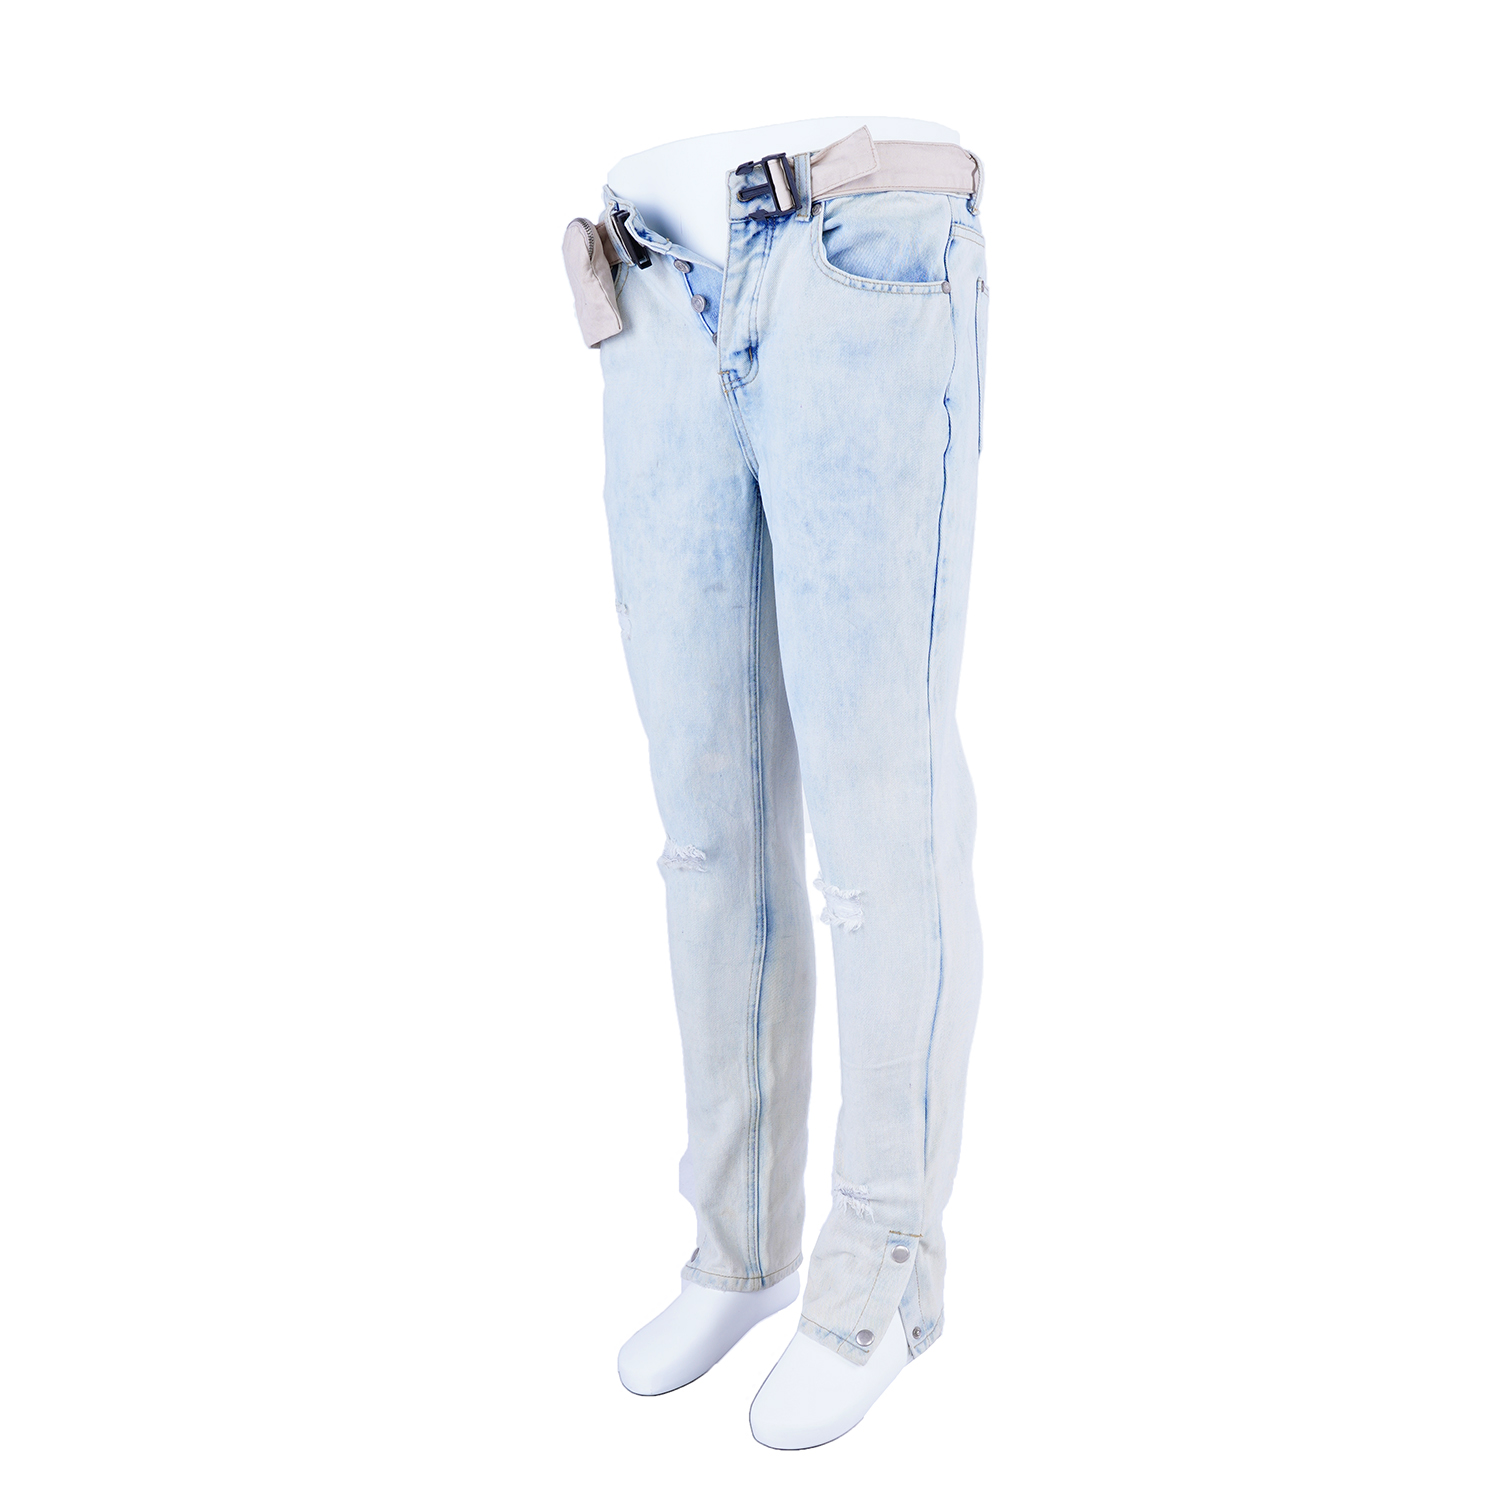 SKYKINGDOM in stock low price jeans low waist light blue leg button denim jeans men